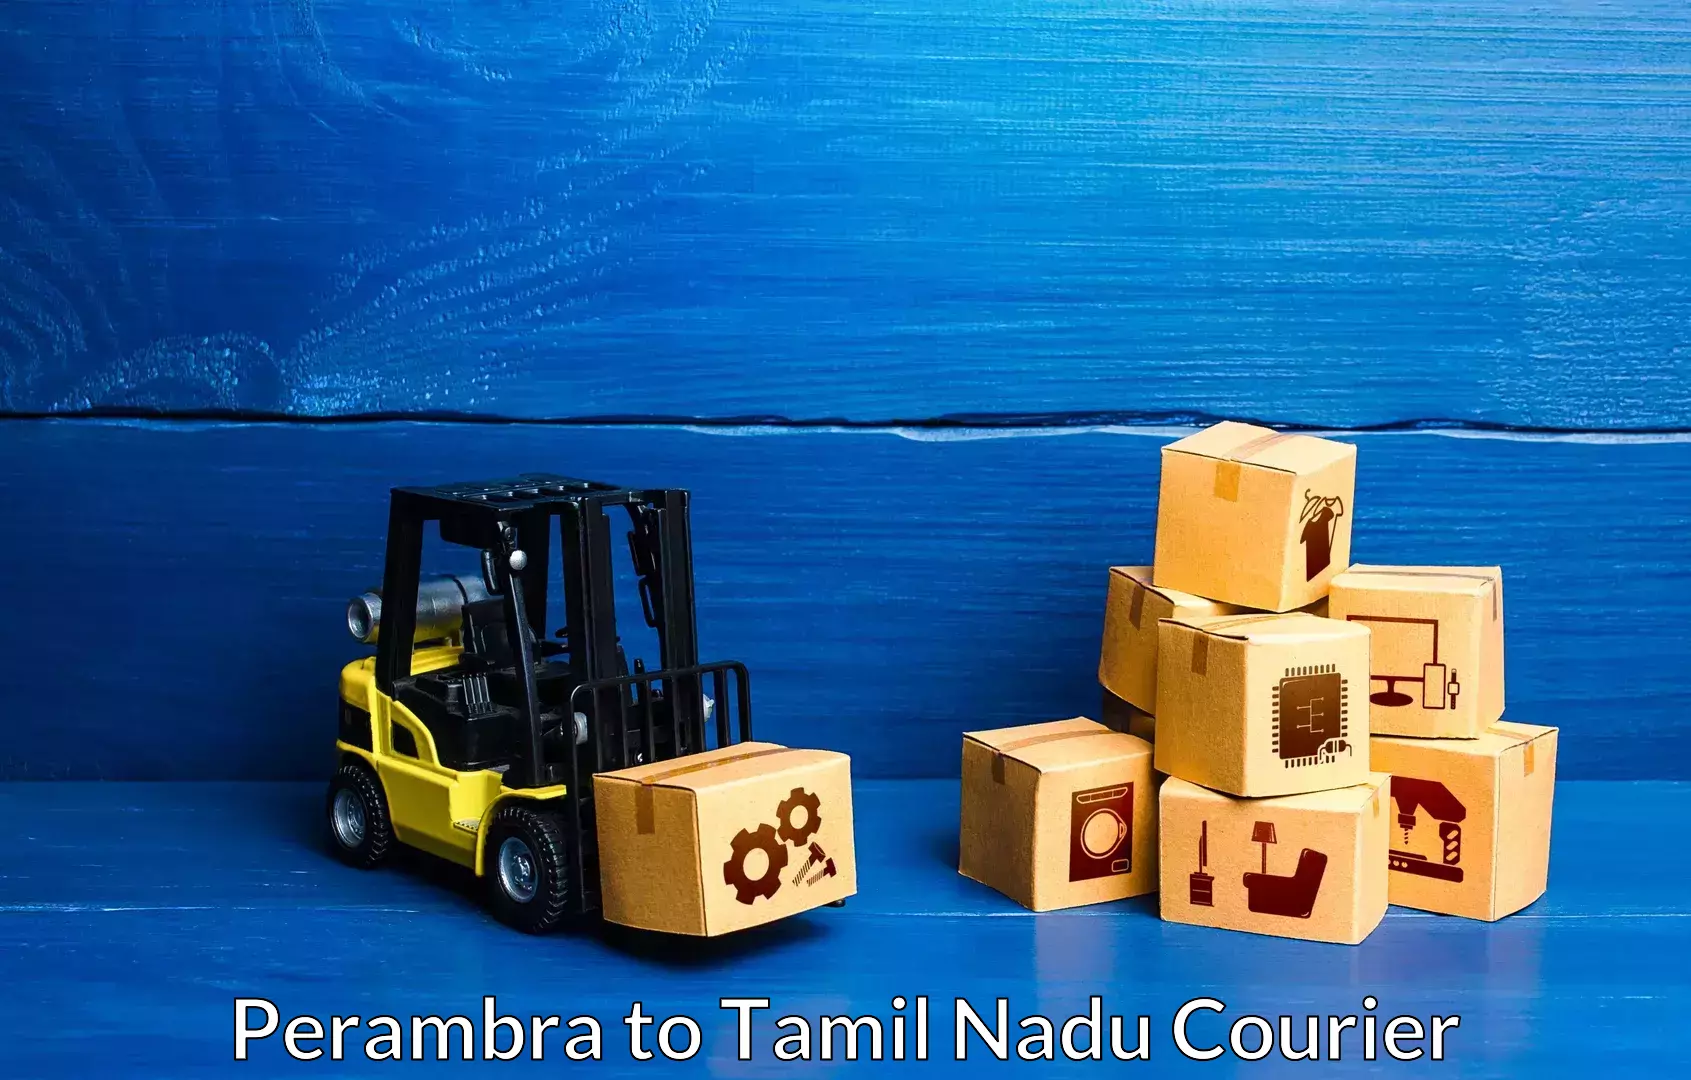 Furniture relocation experts Perambra to Tamil Nadu